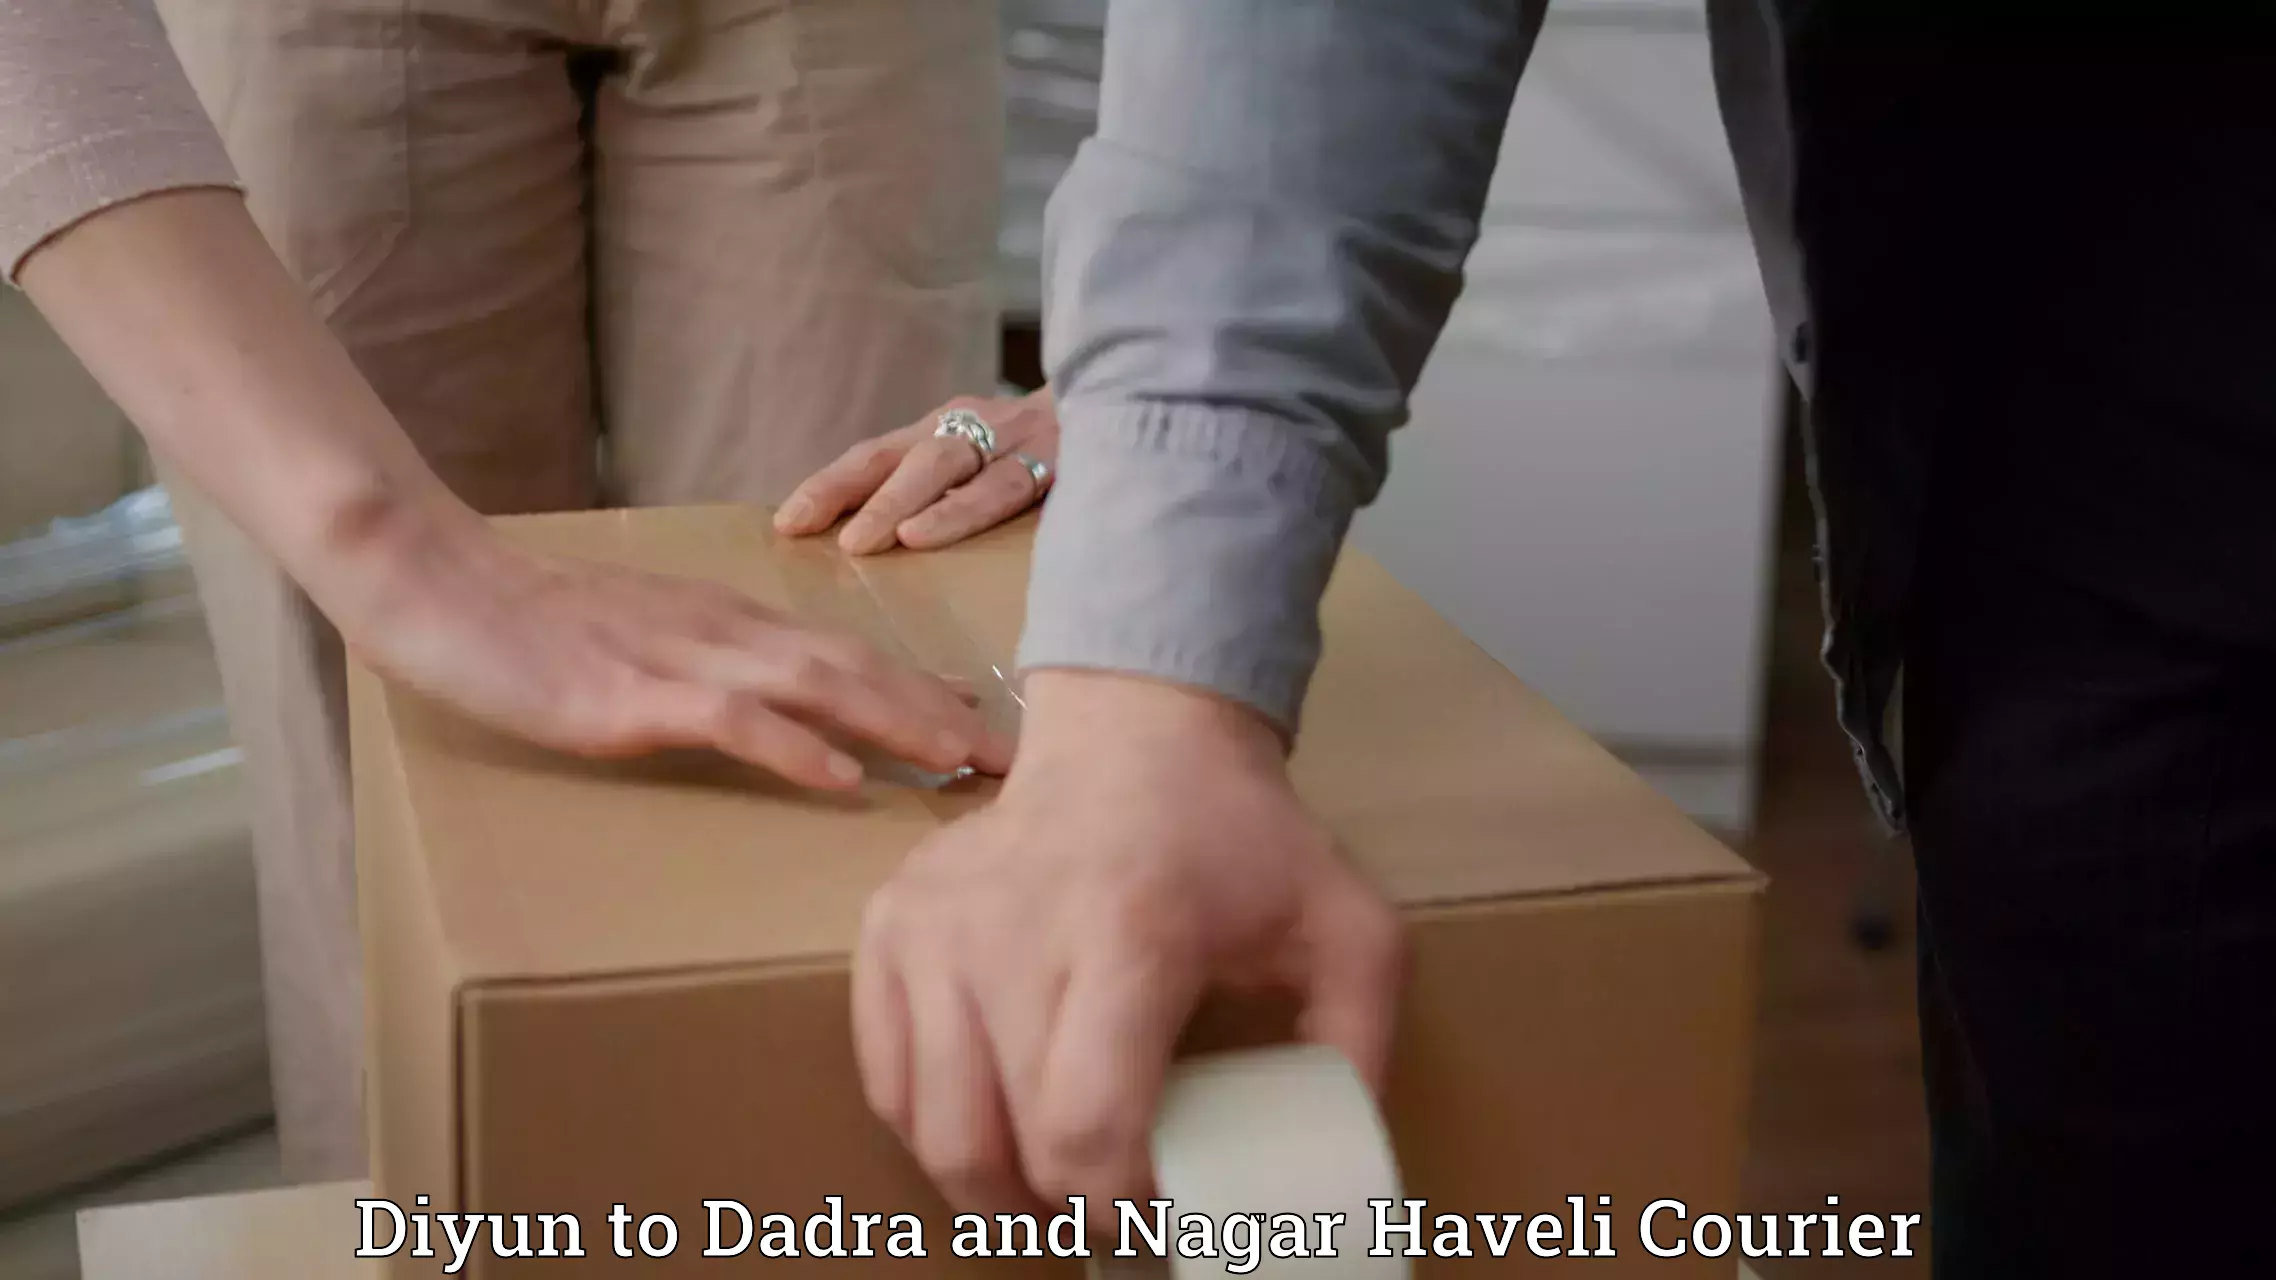 Luggage shipment tracking Diyun to Dadra and Nagar Haveli